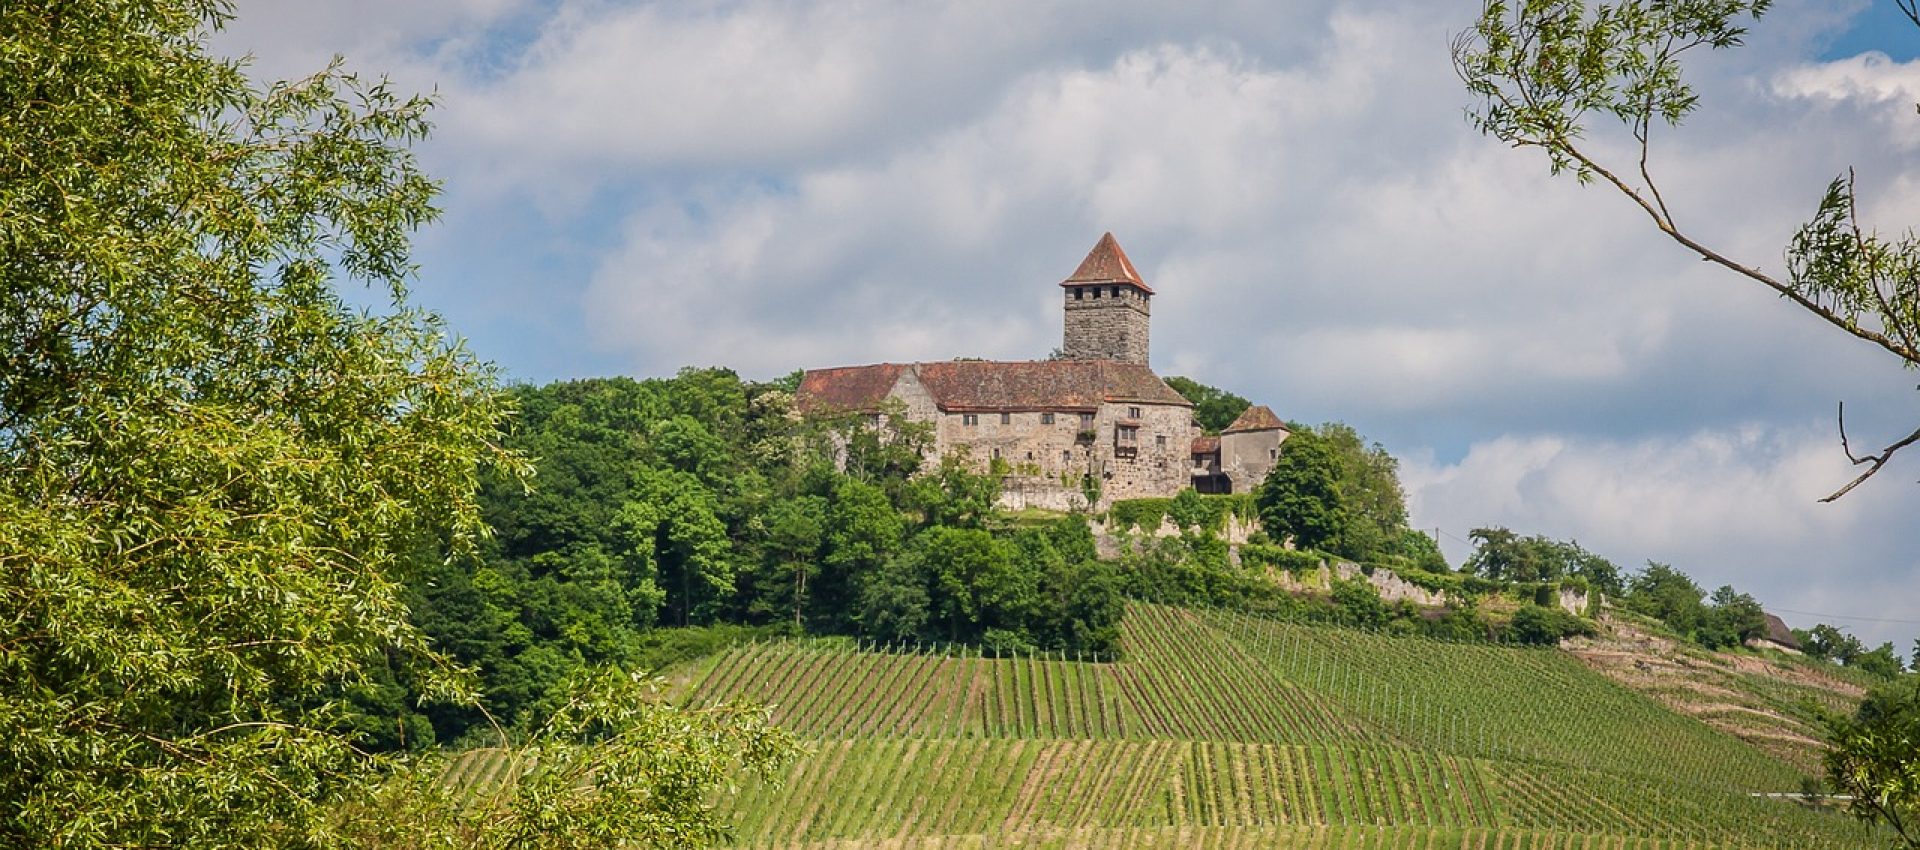 Burg Lichtenberg im Bottwartal